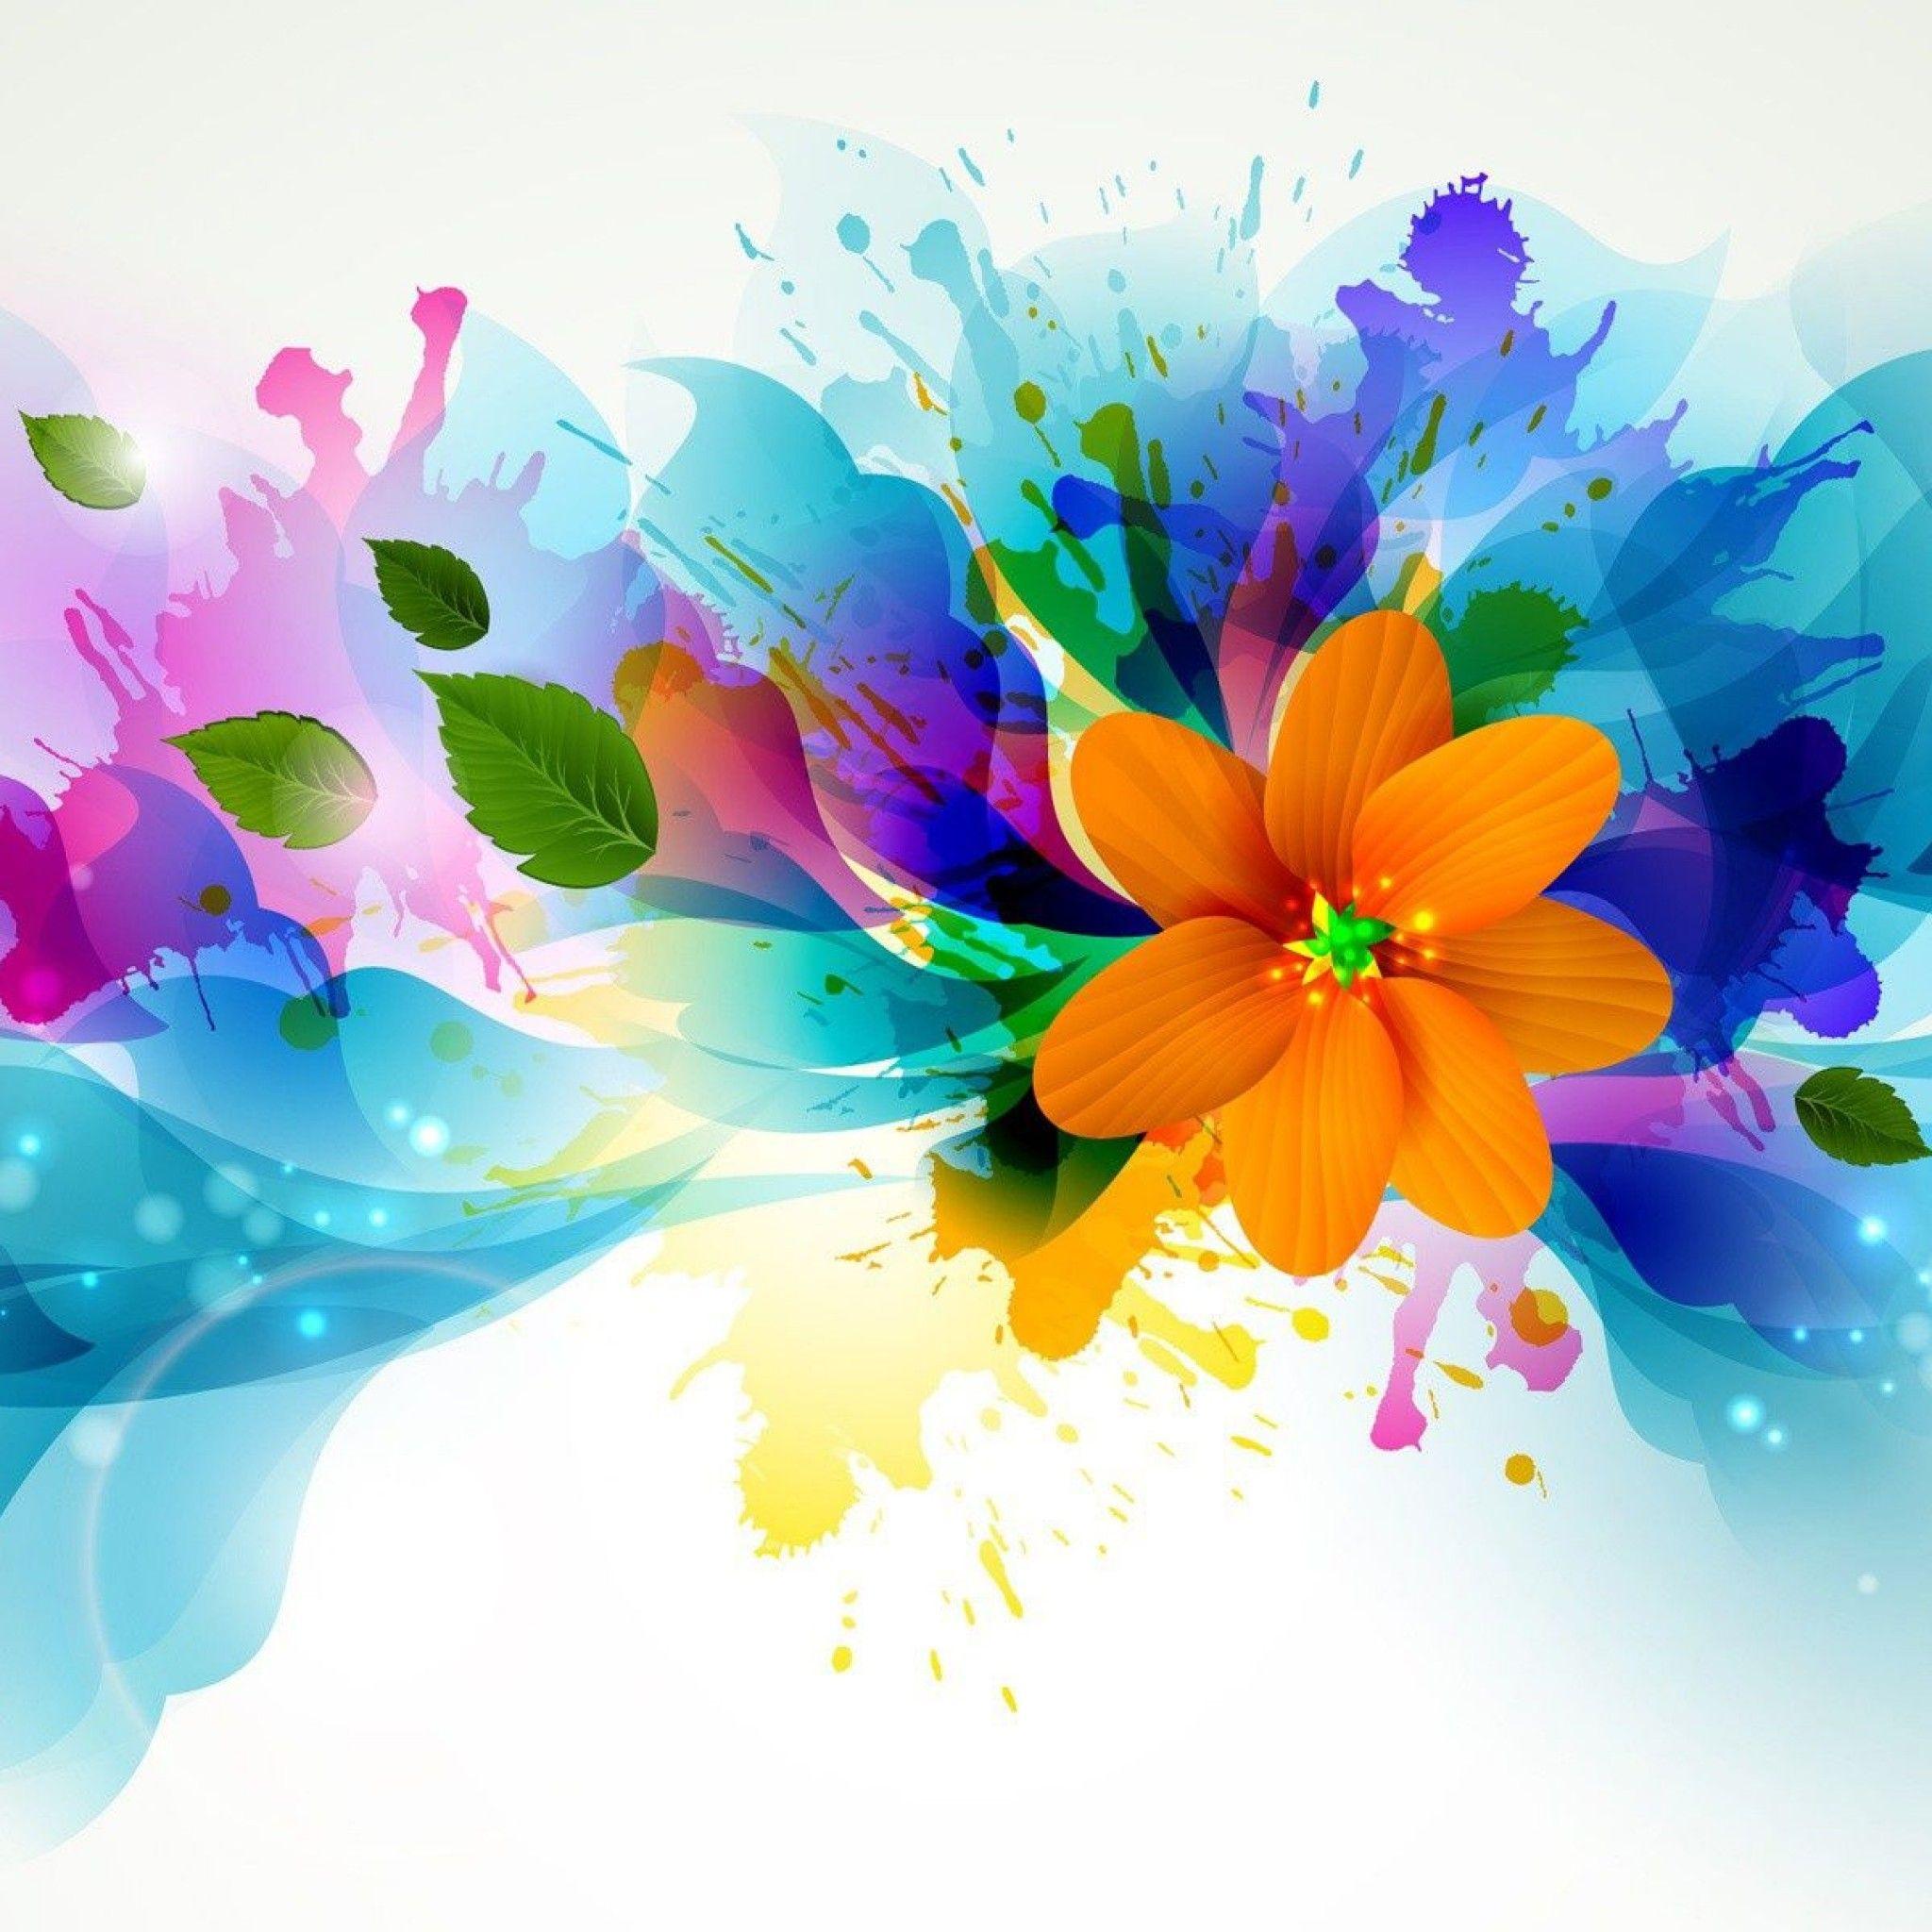 Abstract Design Flower Wallpaper. Abstract flower art